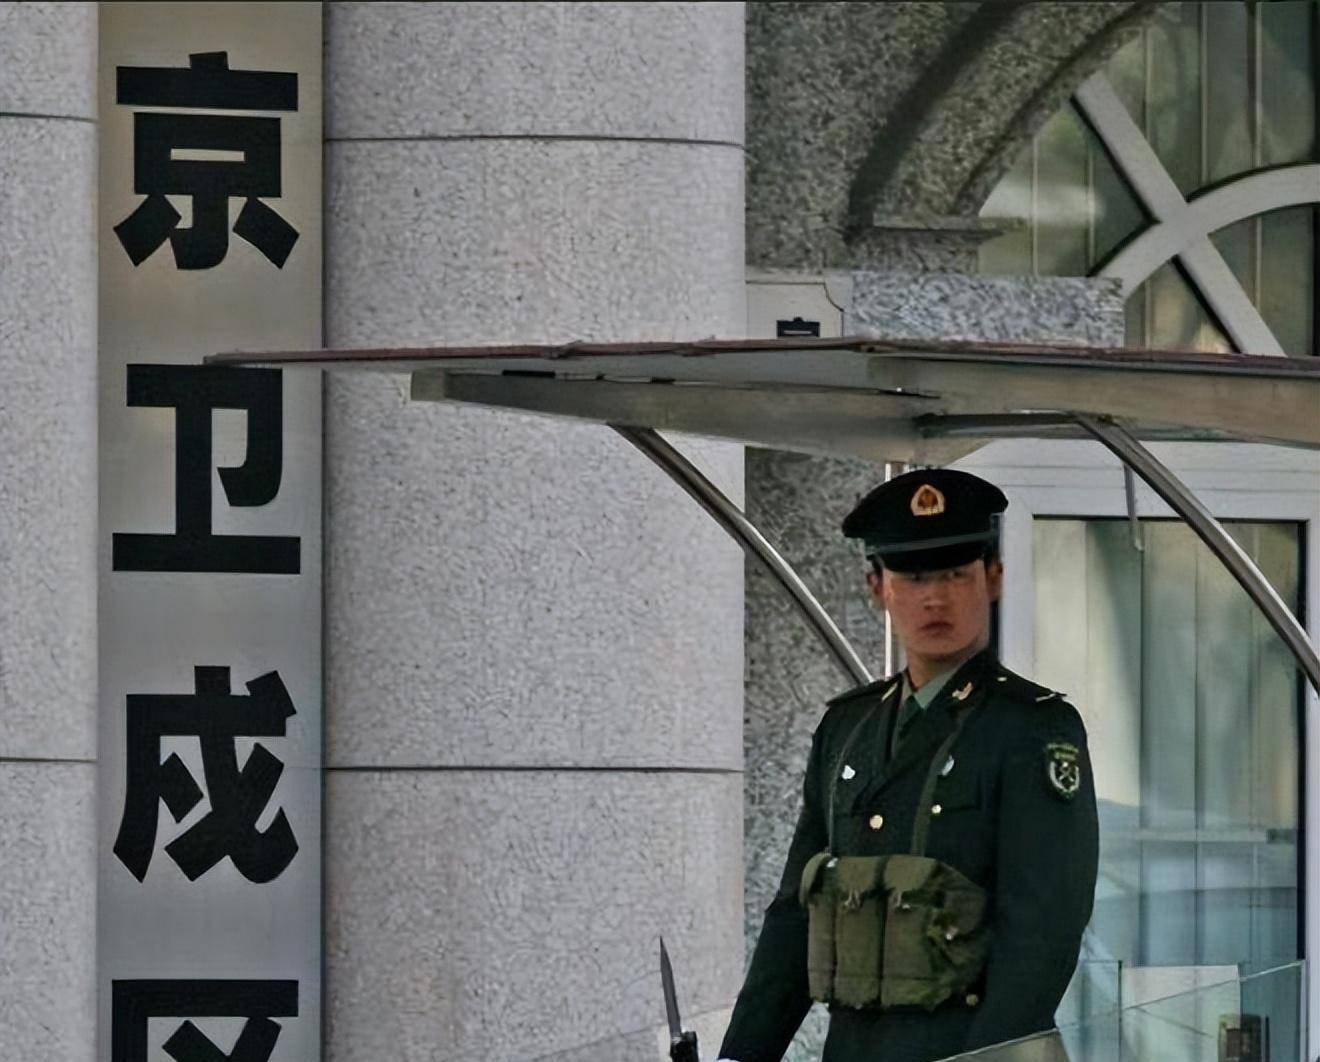 北京卫戍区部队编制图片